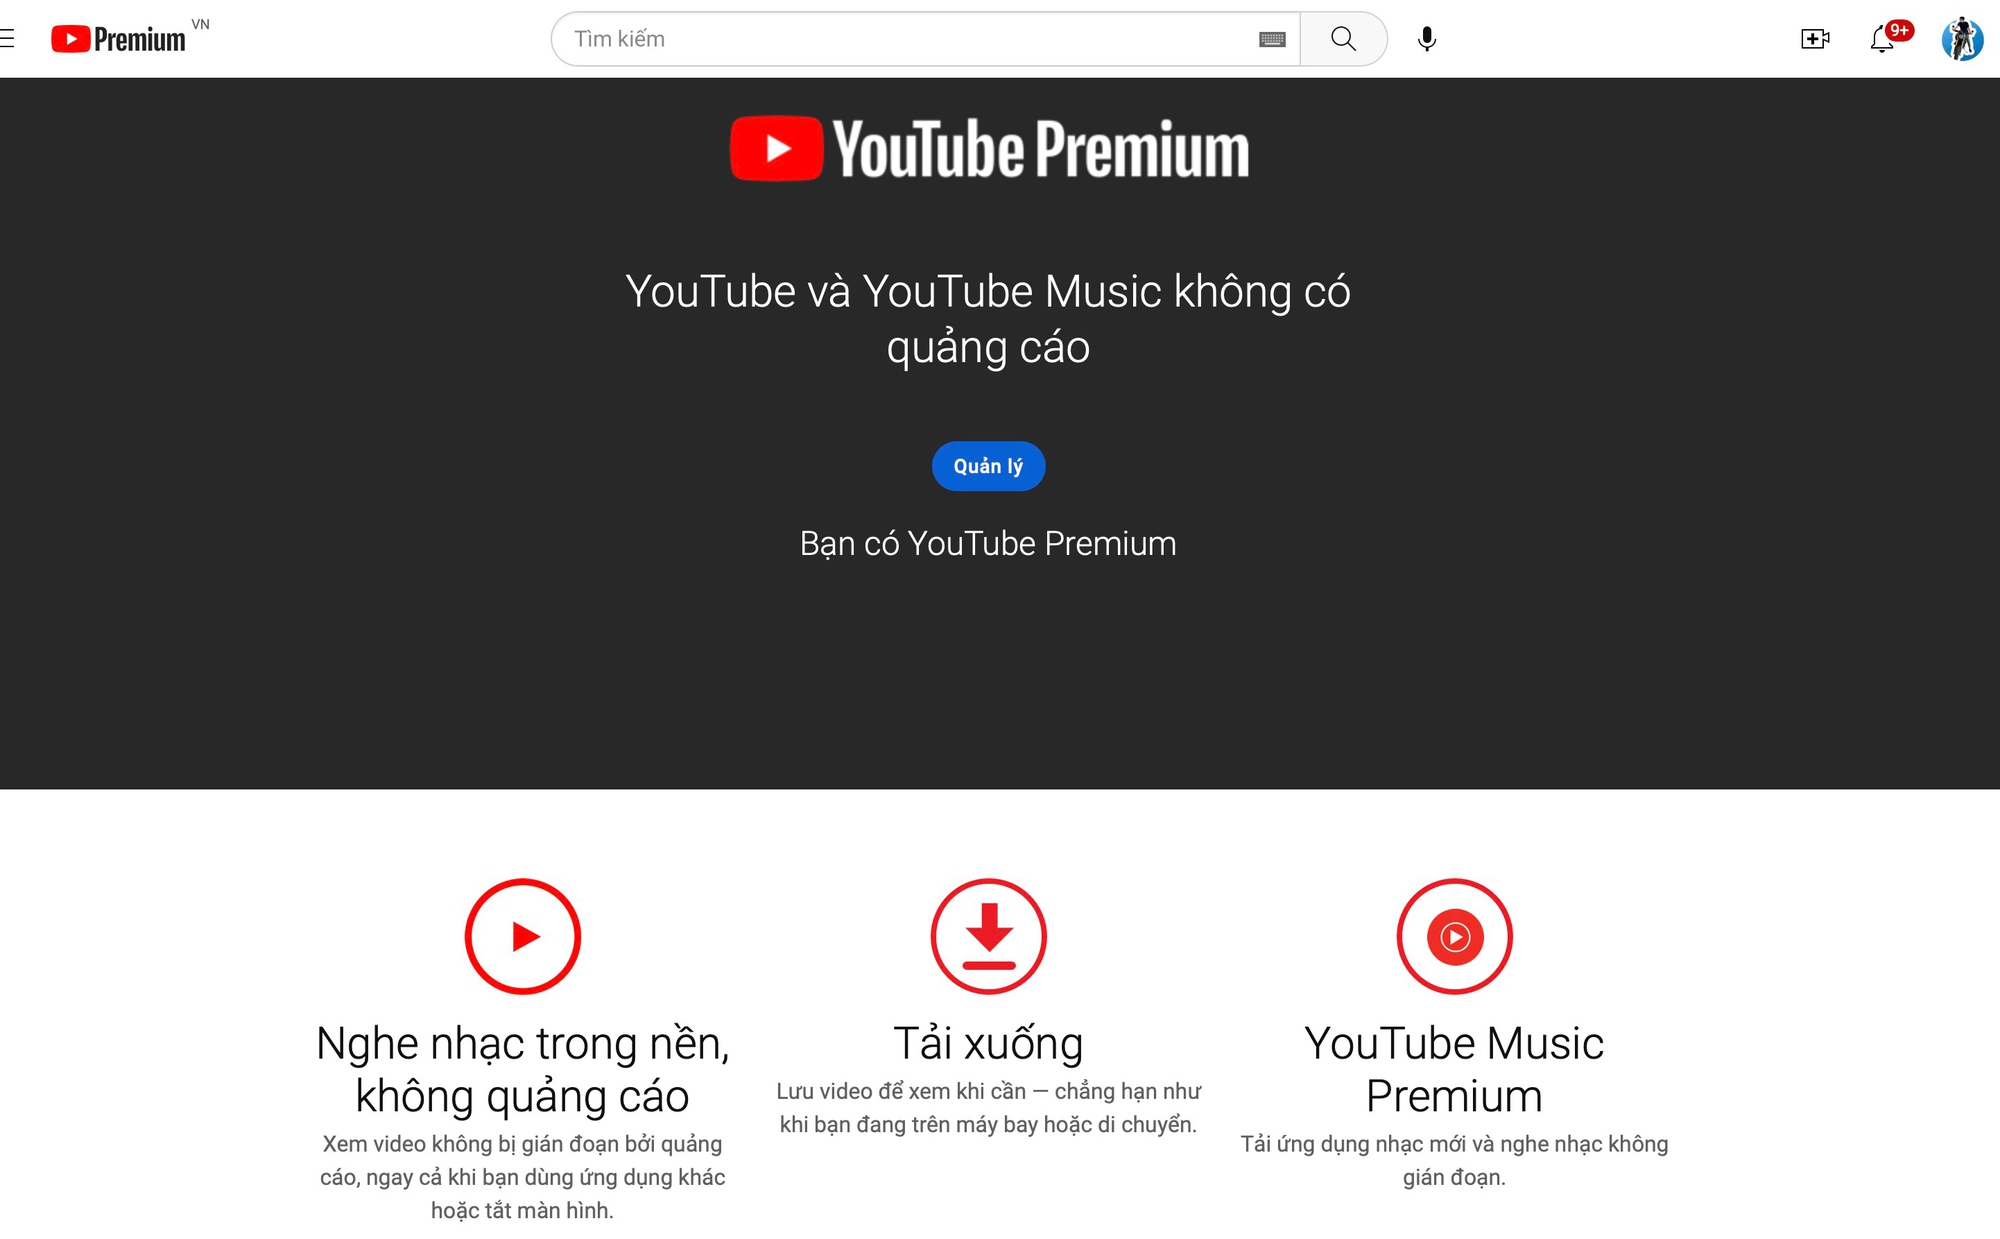 Cách đăng ký dịch vụ xem YouTube Premium ở Việt Nam để có giá hời, được miễn phí dùng thử - Ảnh 1.